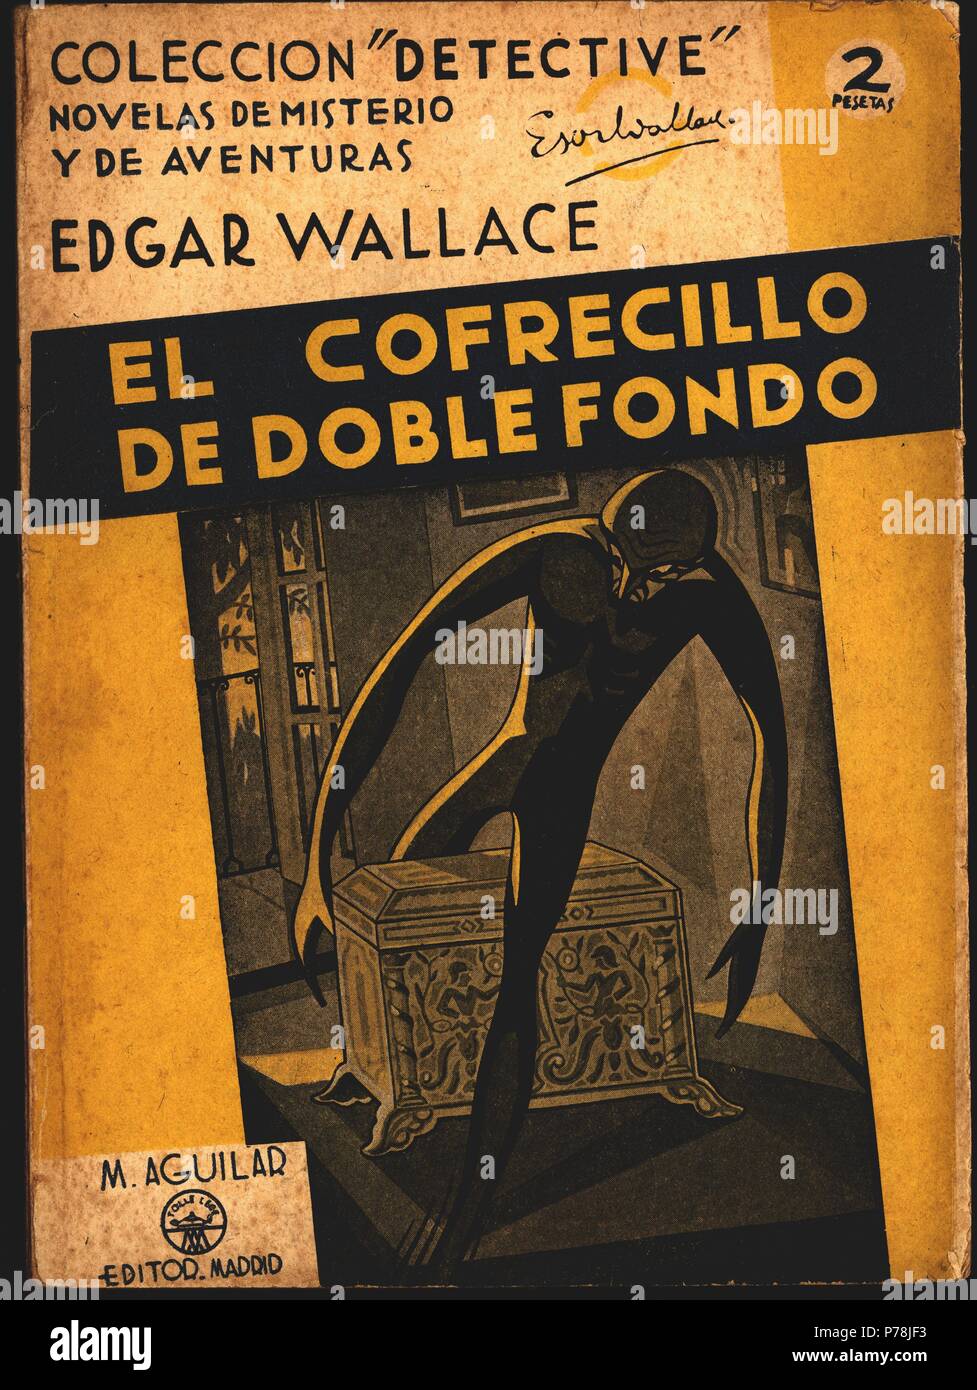 Novela policíaca 'El cofrecillo de doble fondo', de Edgar Wallace. Madrid, editorial Aguilar, 1940. Stock Photo